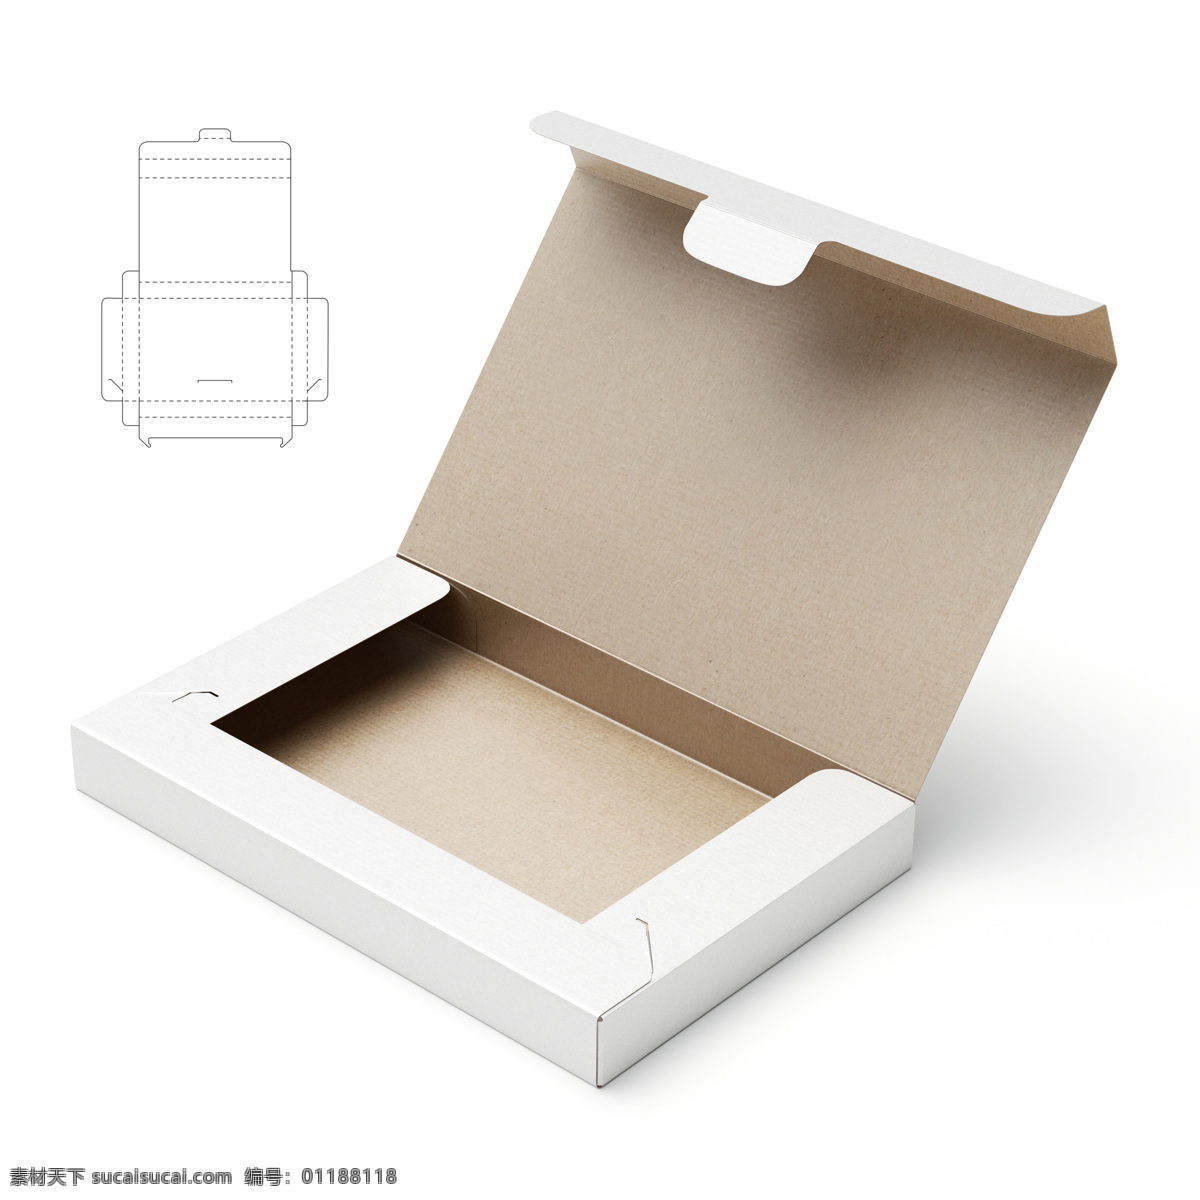 纸盒 效果图 钢刀 线 纸盒设计 包装盒设计 包装盒展开图 包装平面图 钢刀线 包装设计 包装效果图 空白包装盒 盒子 产品包装盒 其他类别 生活百科 白色